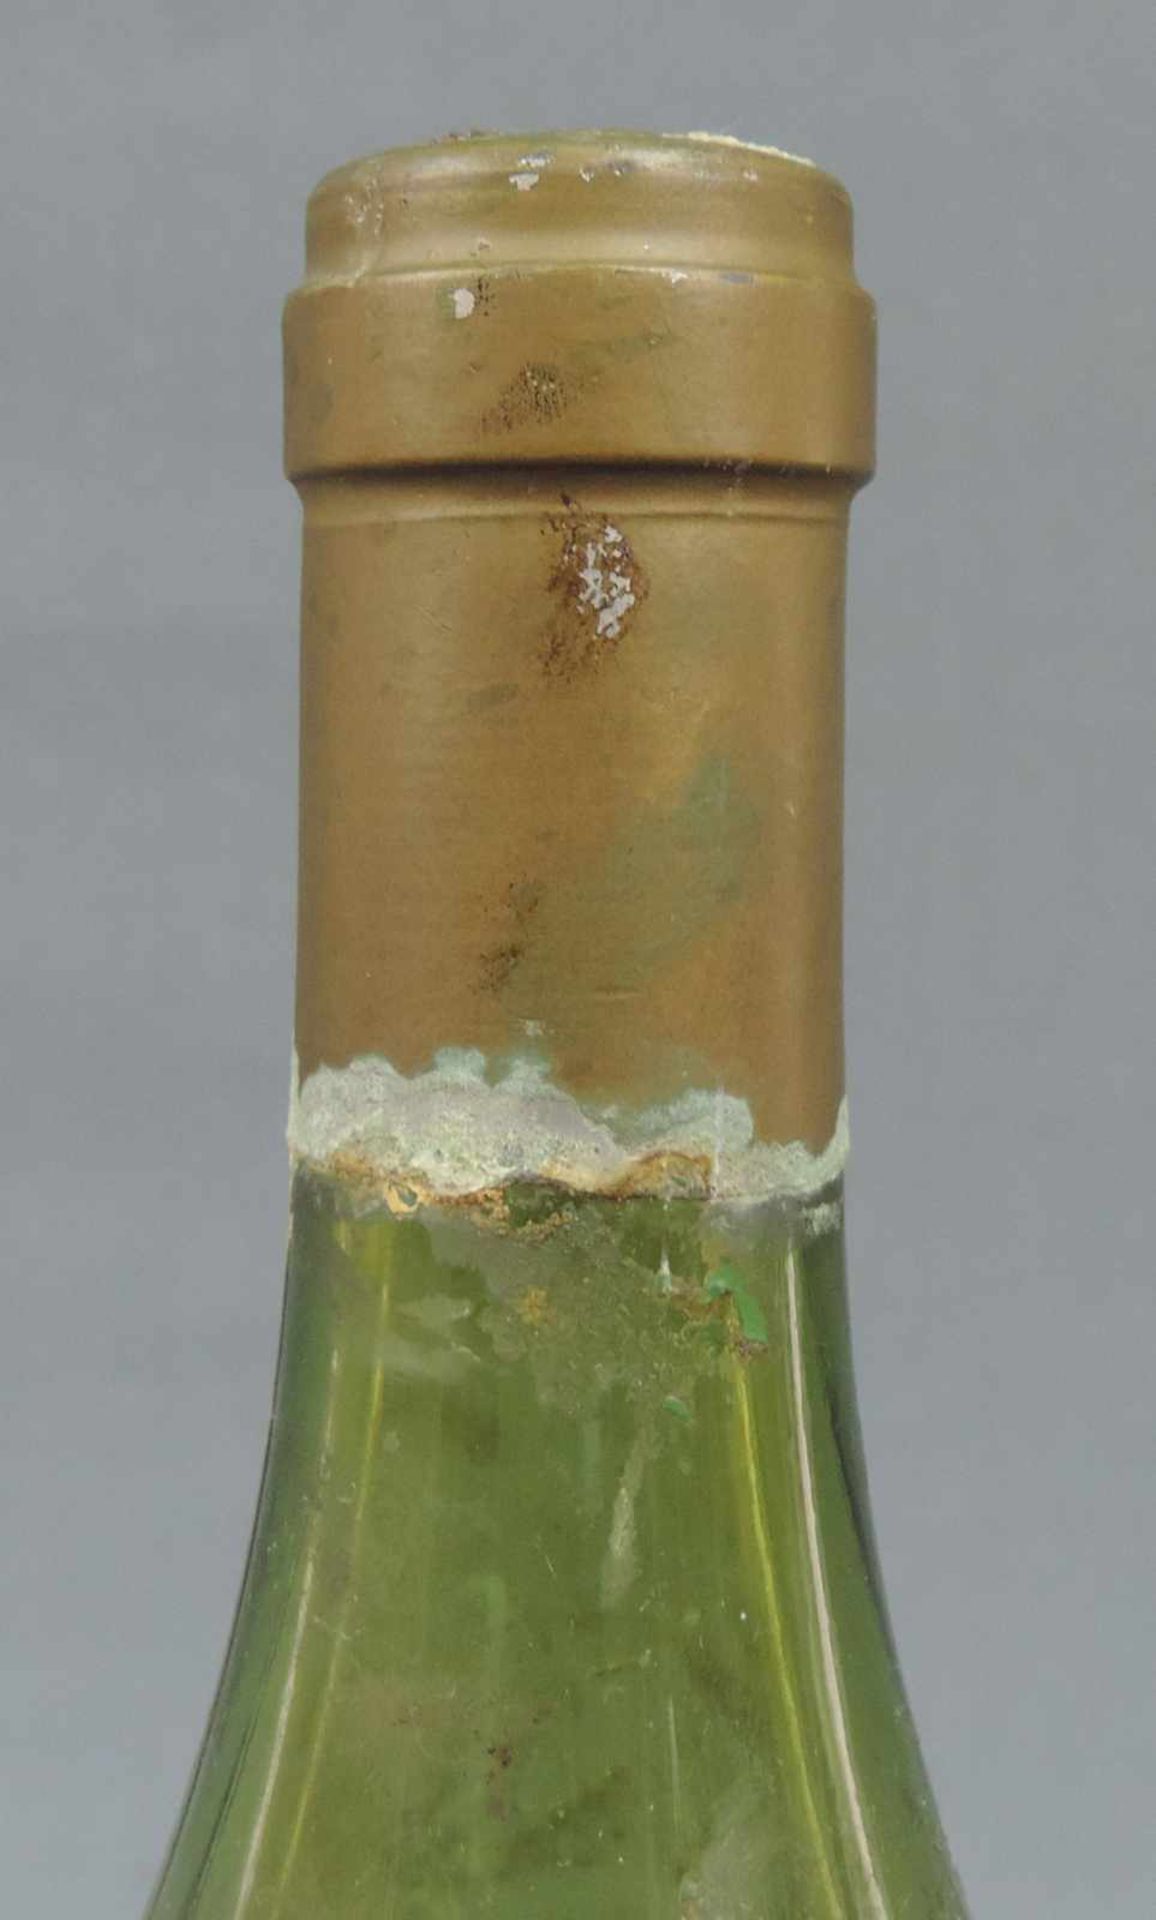 1961 Auvenay, Bourgogne AC, de LEROY. Eine ganze Flasche. Rotwein. Frankreich. Burgund. 1961 - Image 6 of 7